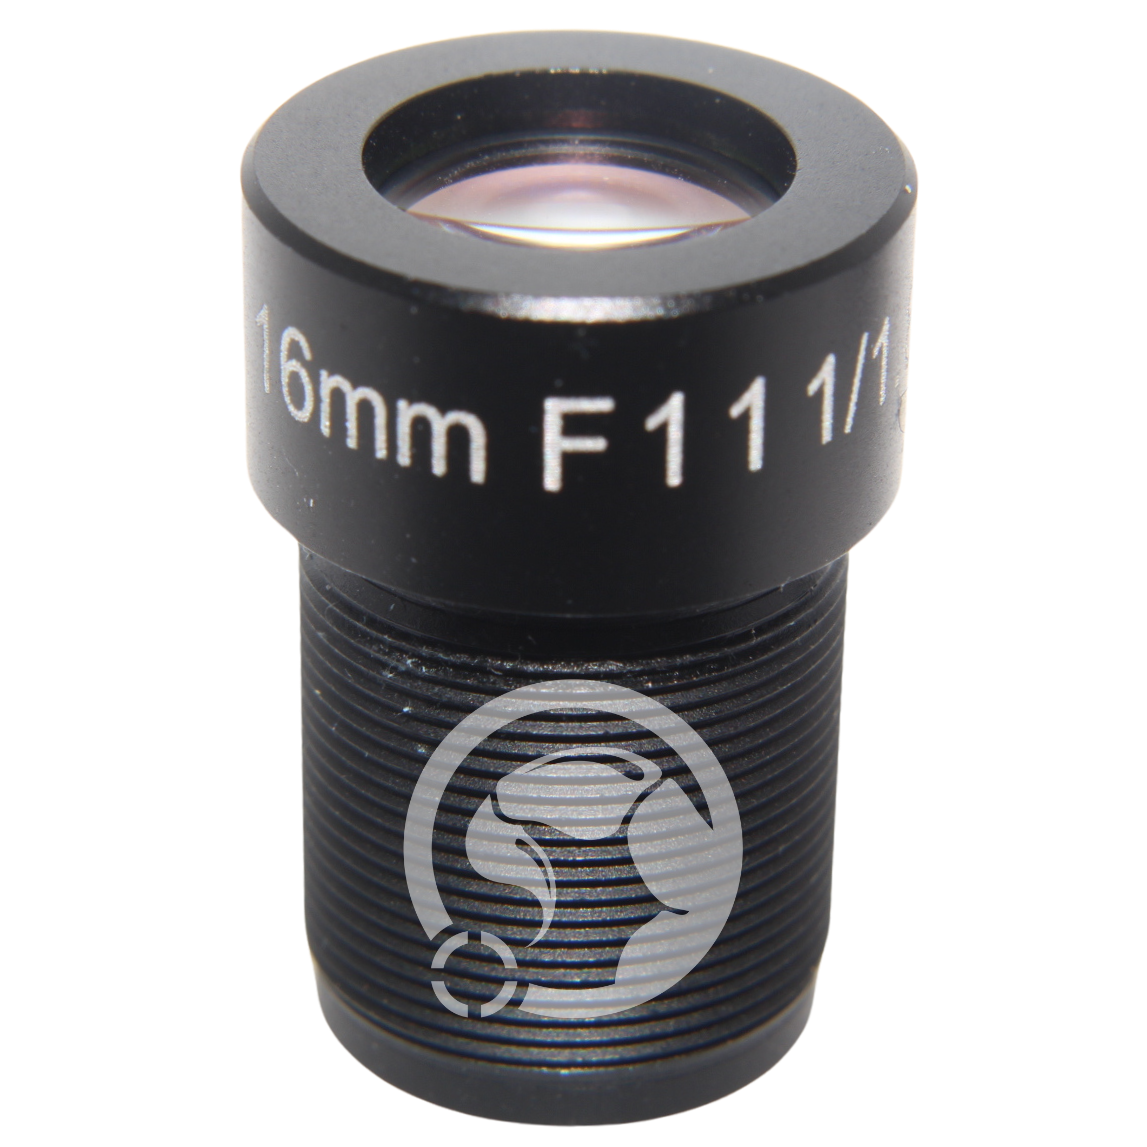 M12 Lens 16mm F11.0